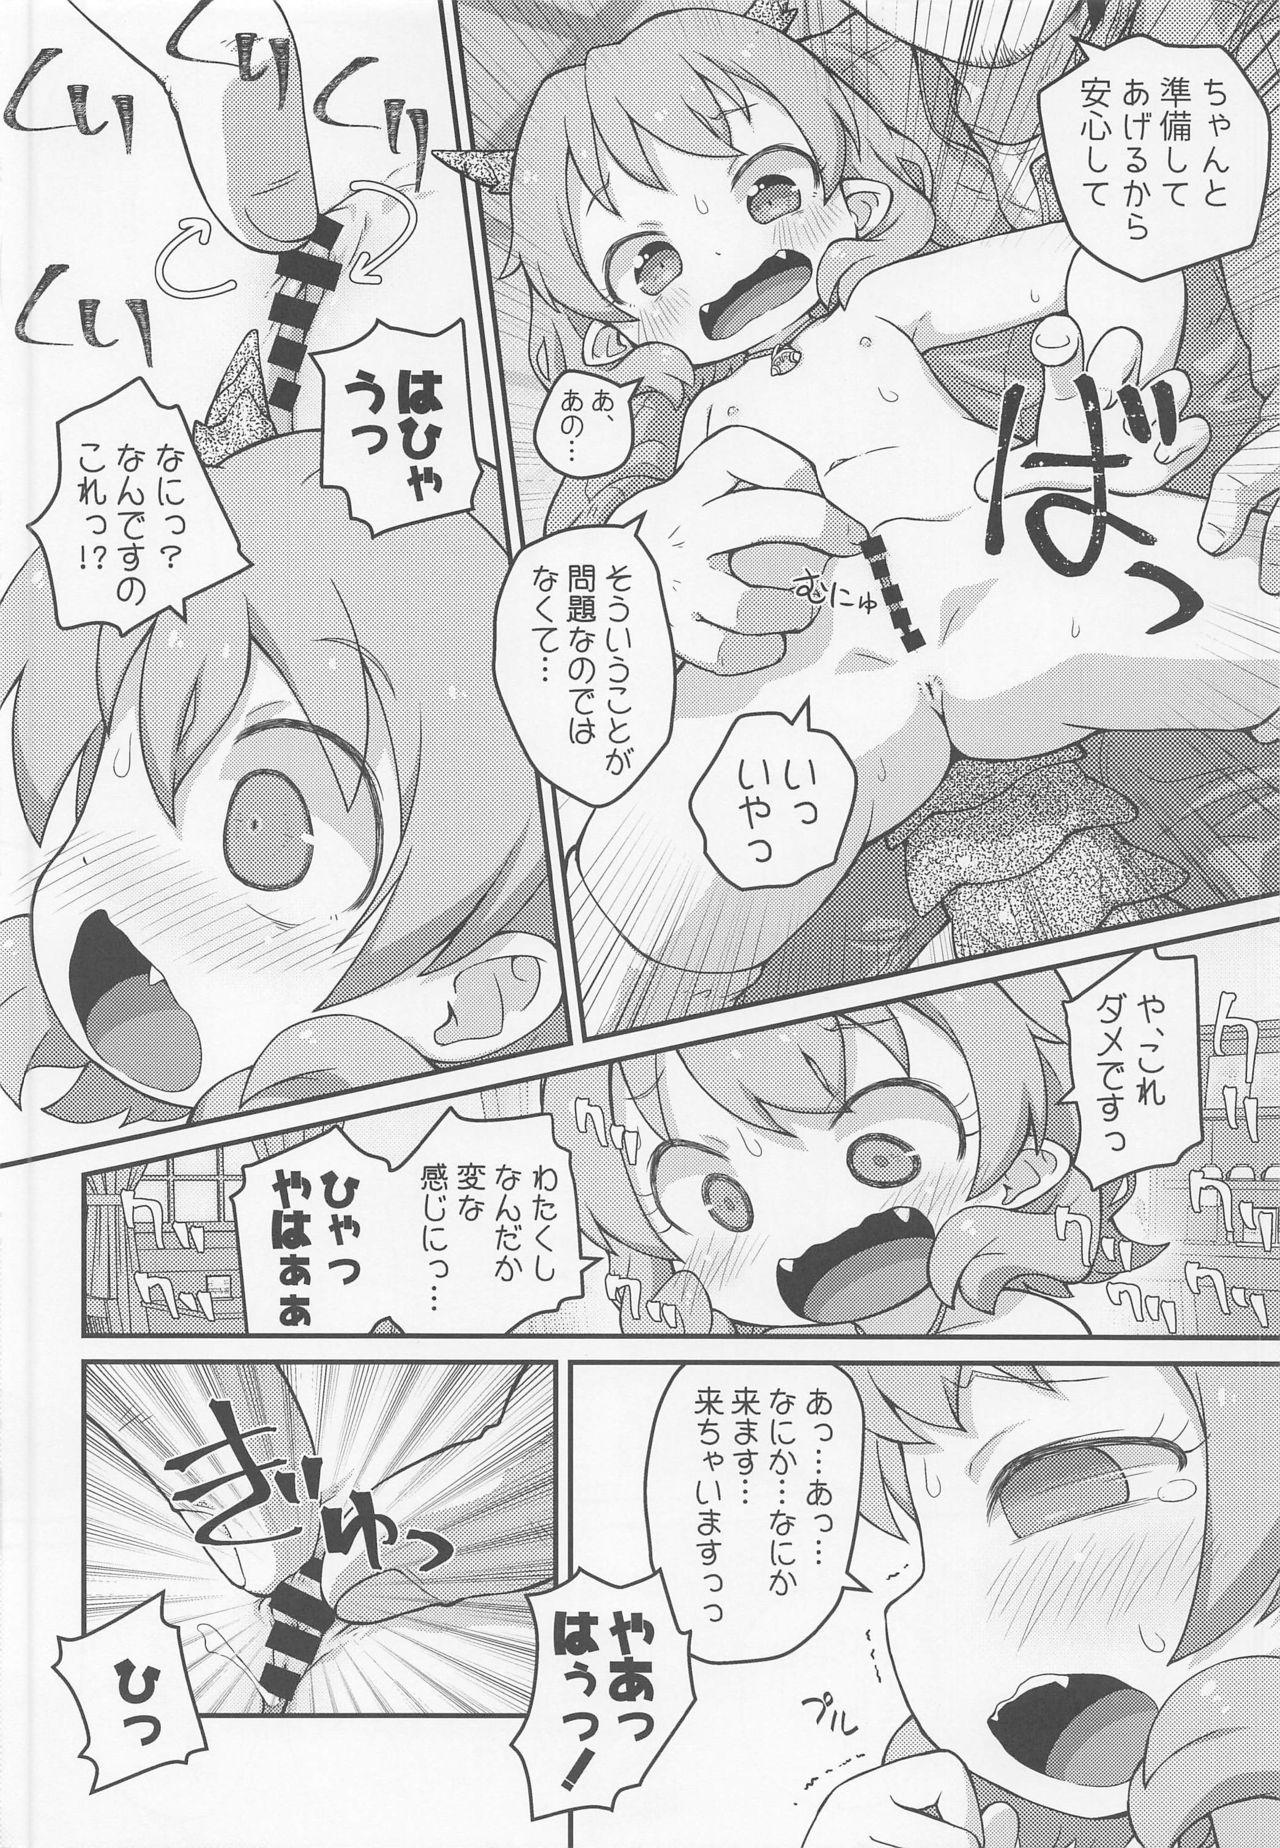 Spit Hanako SOS - Hataage kemono michi Teensex - Page 11